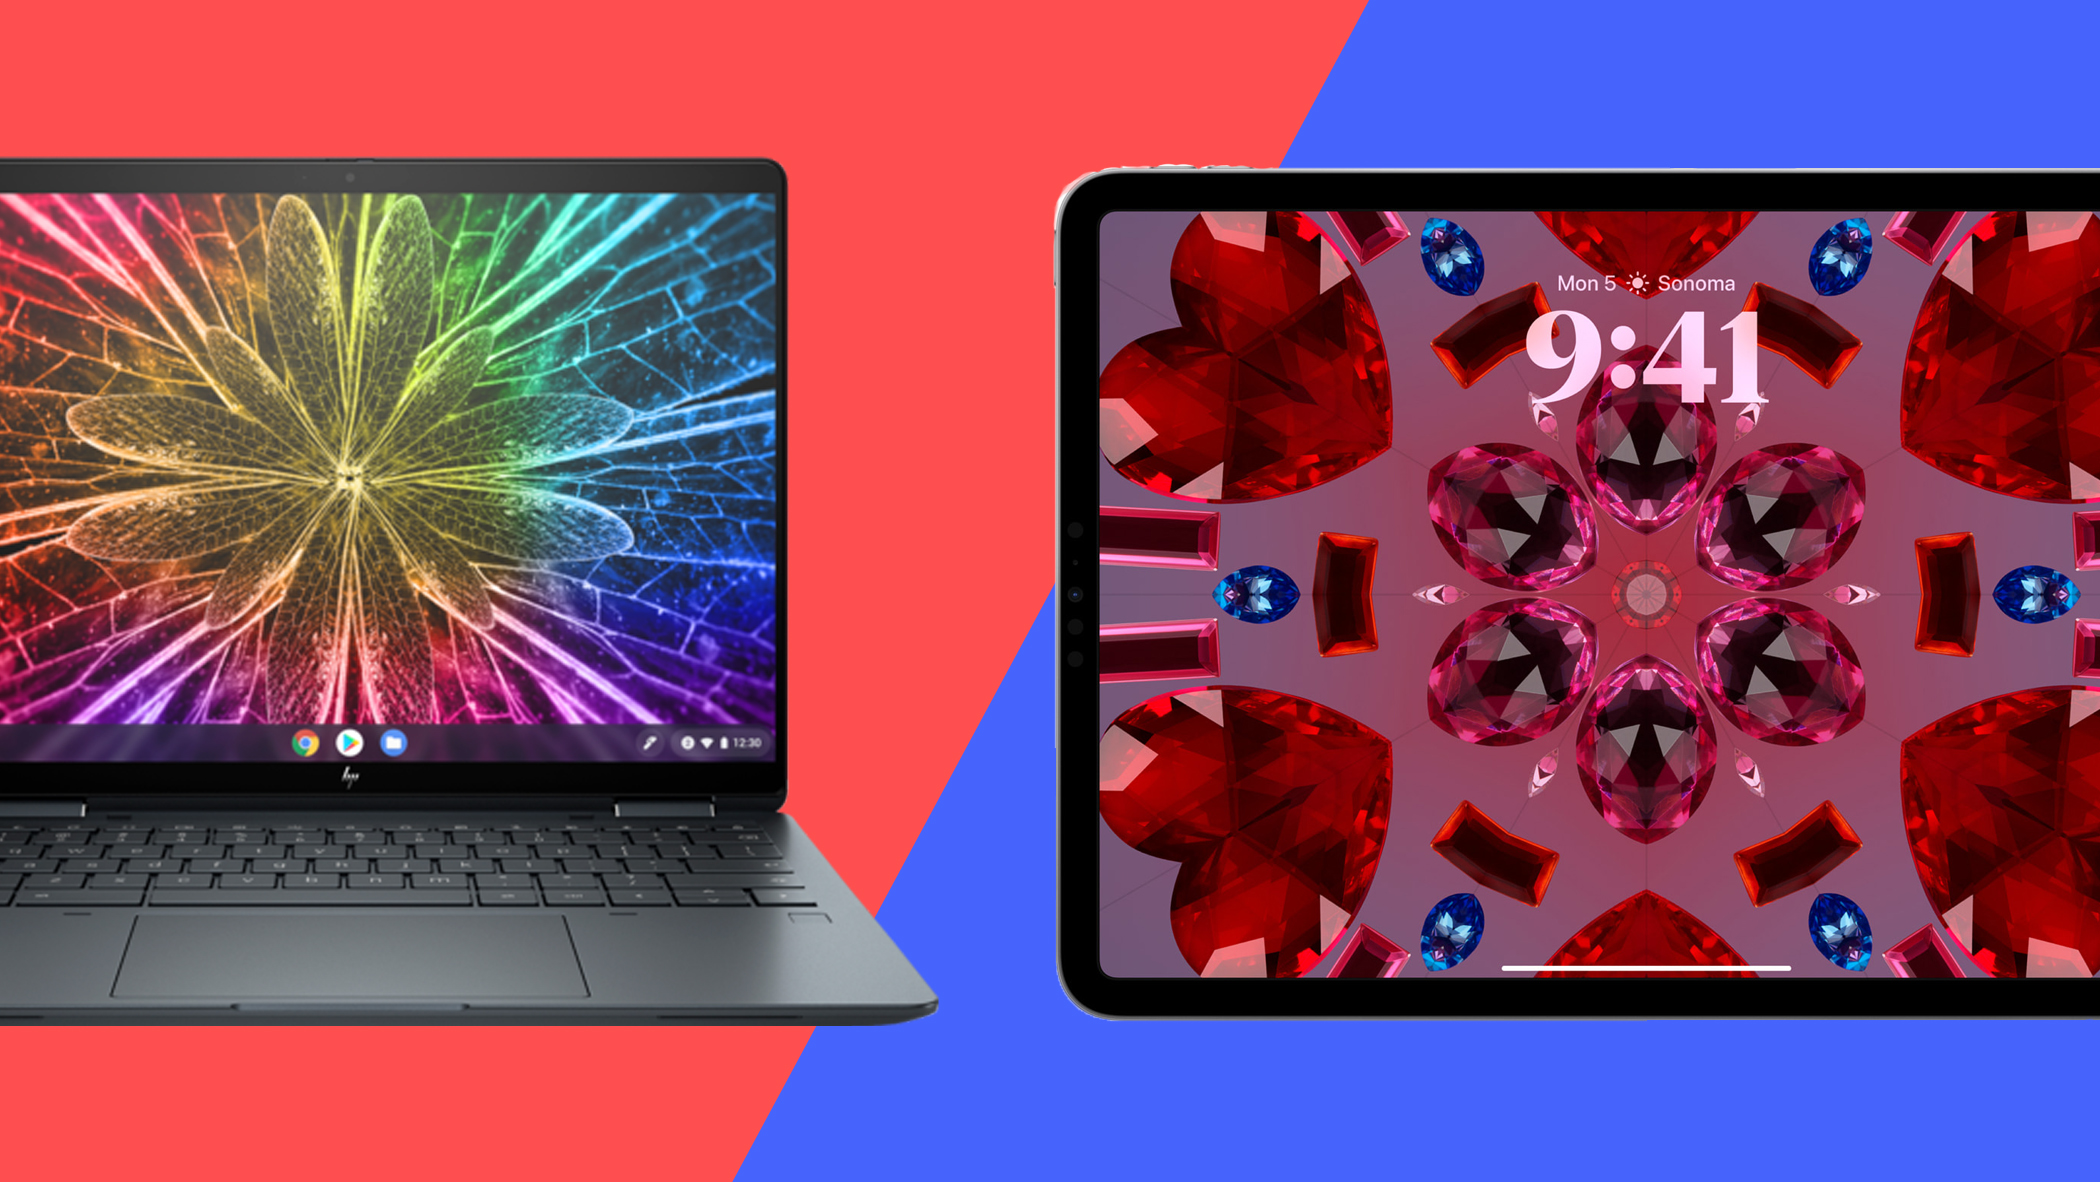 chromebook vs laptop comparison